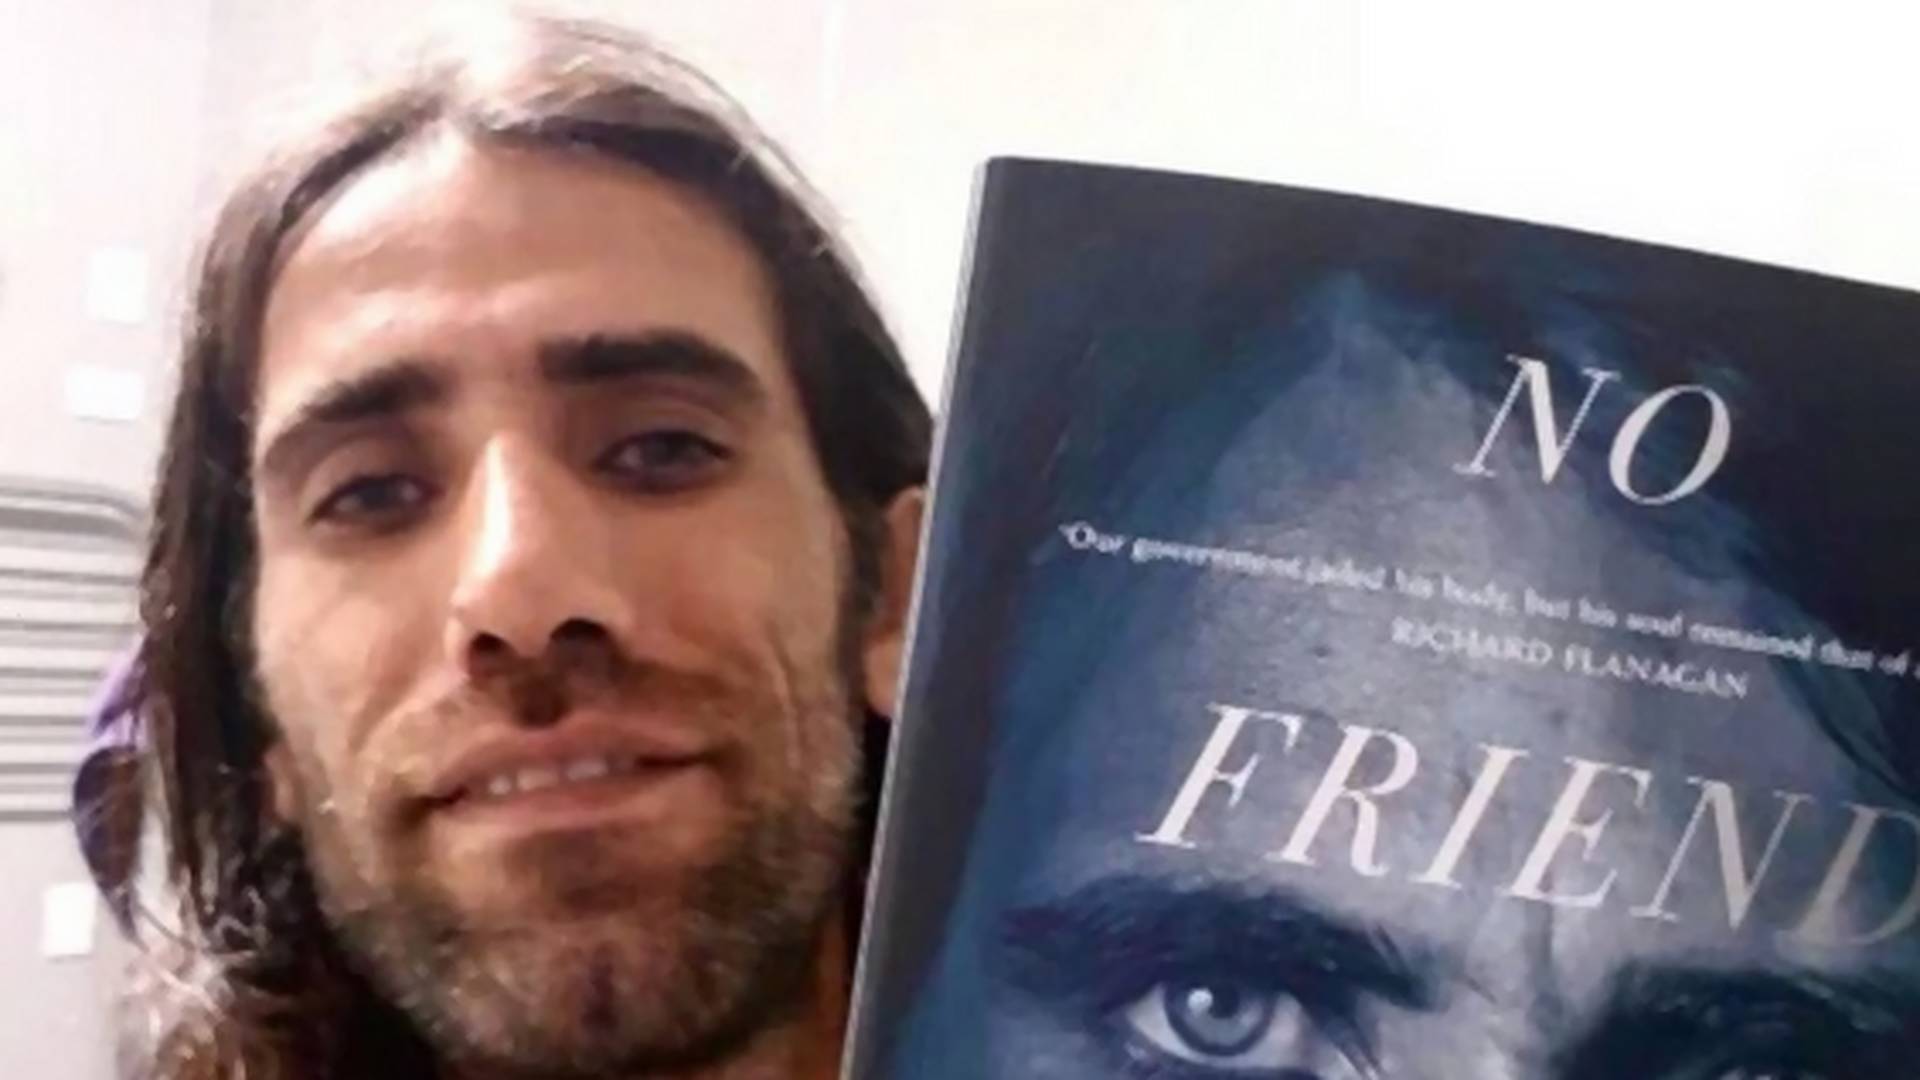 Izbeglica u zatočeništvu nagrađen za knjigu koju je napisao na WhatsApp-u